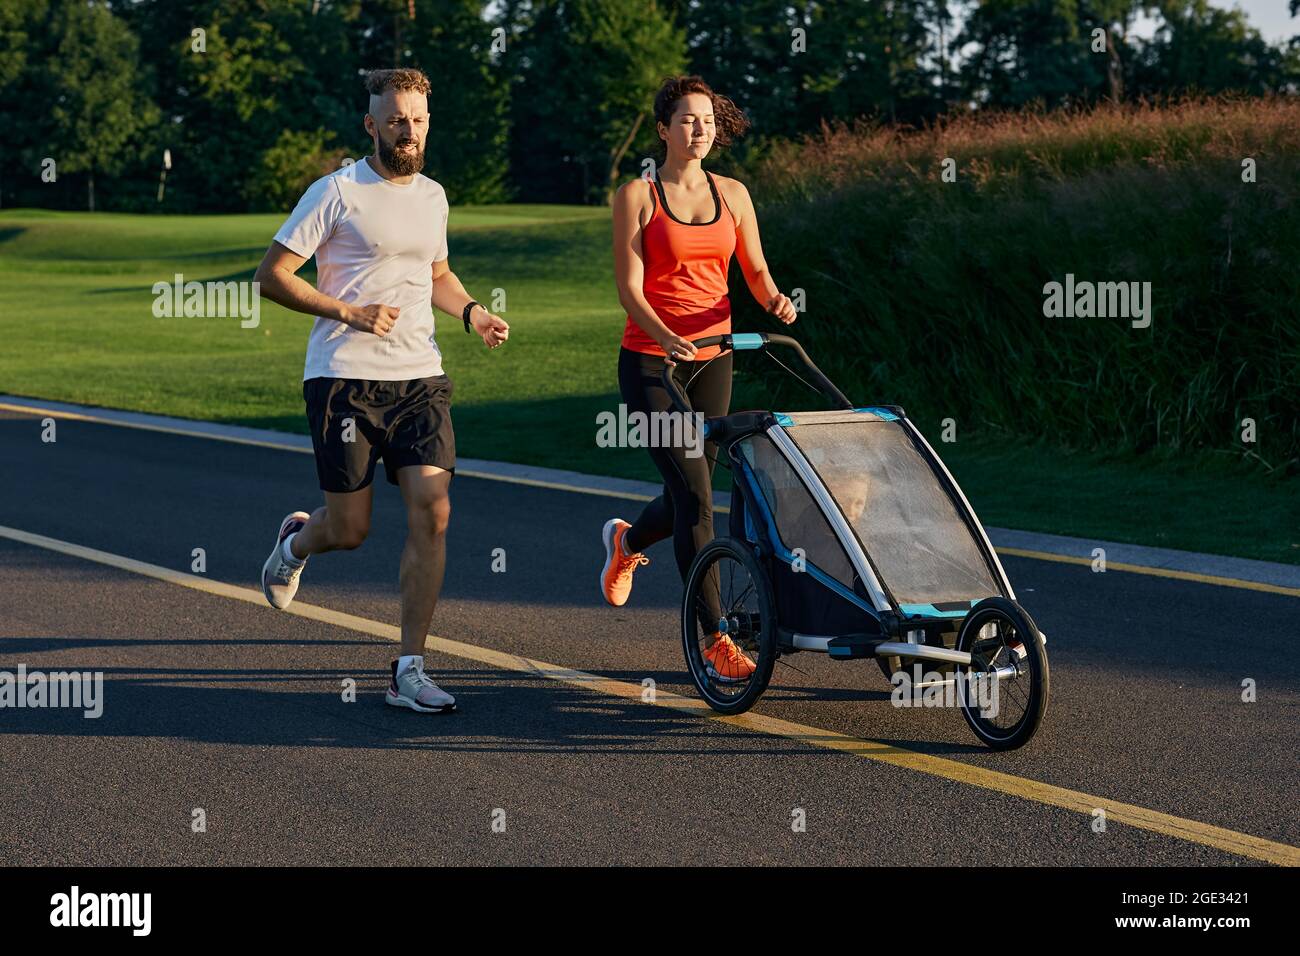 Famille active courant. Une jeune famille avec son enfant dans une poussette de jogging pendant le jogging dans un parc public Banque D'Images